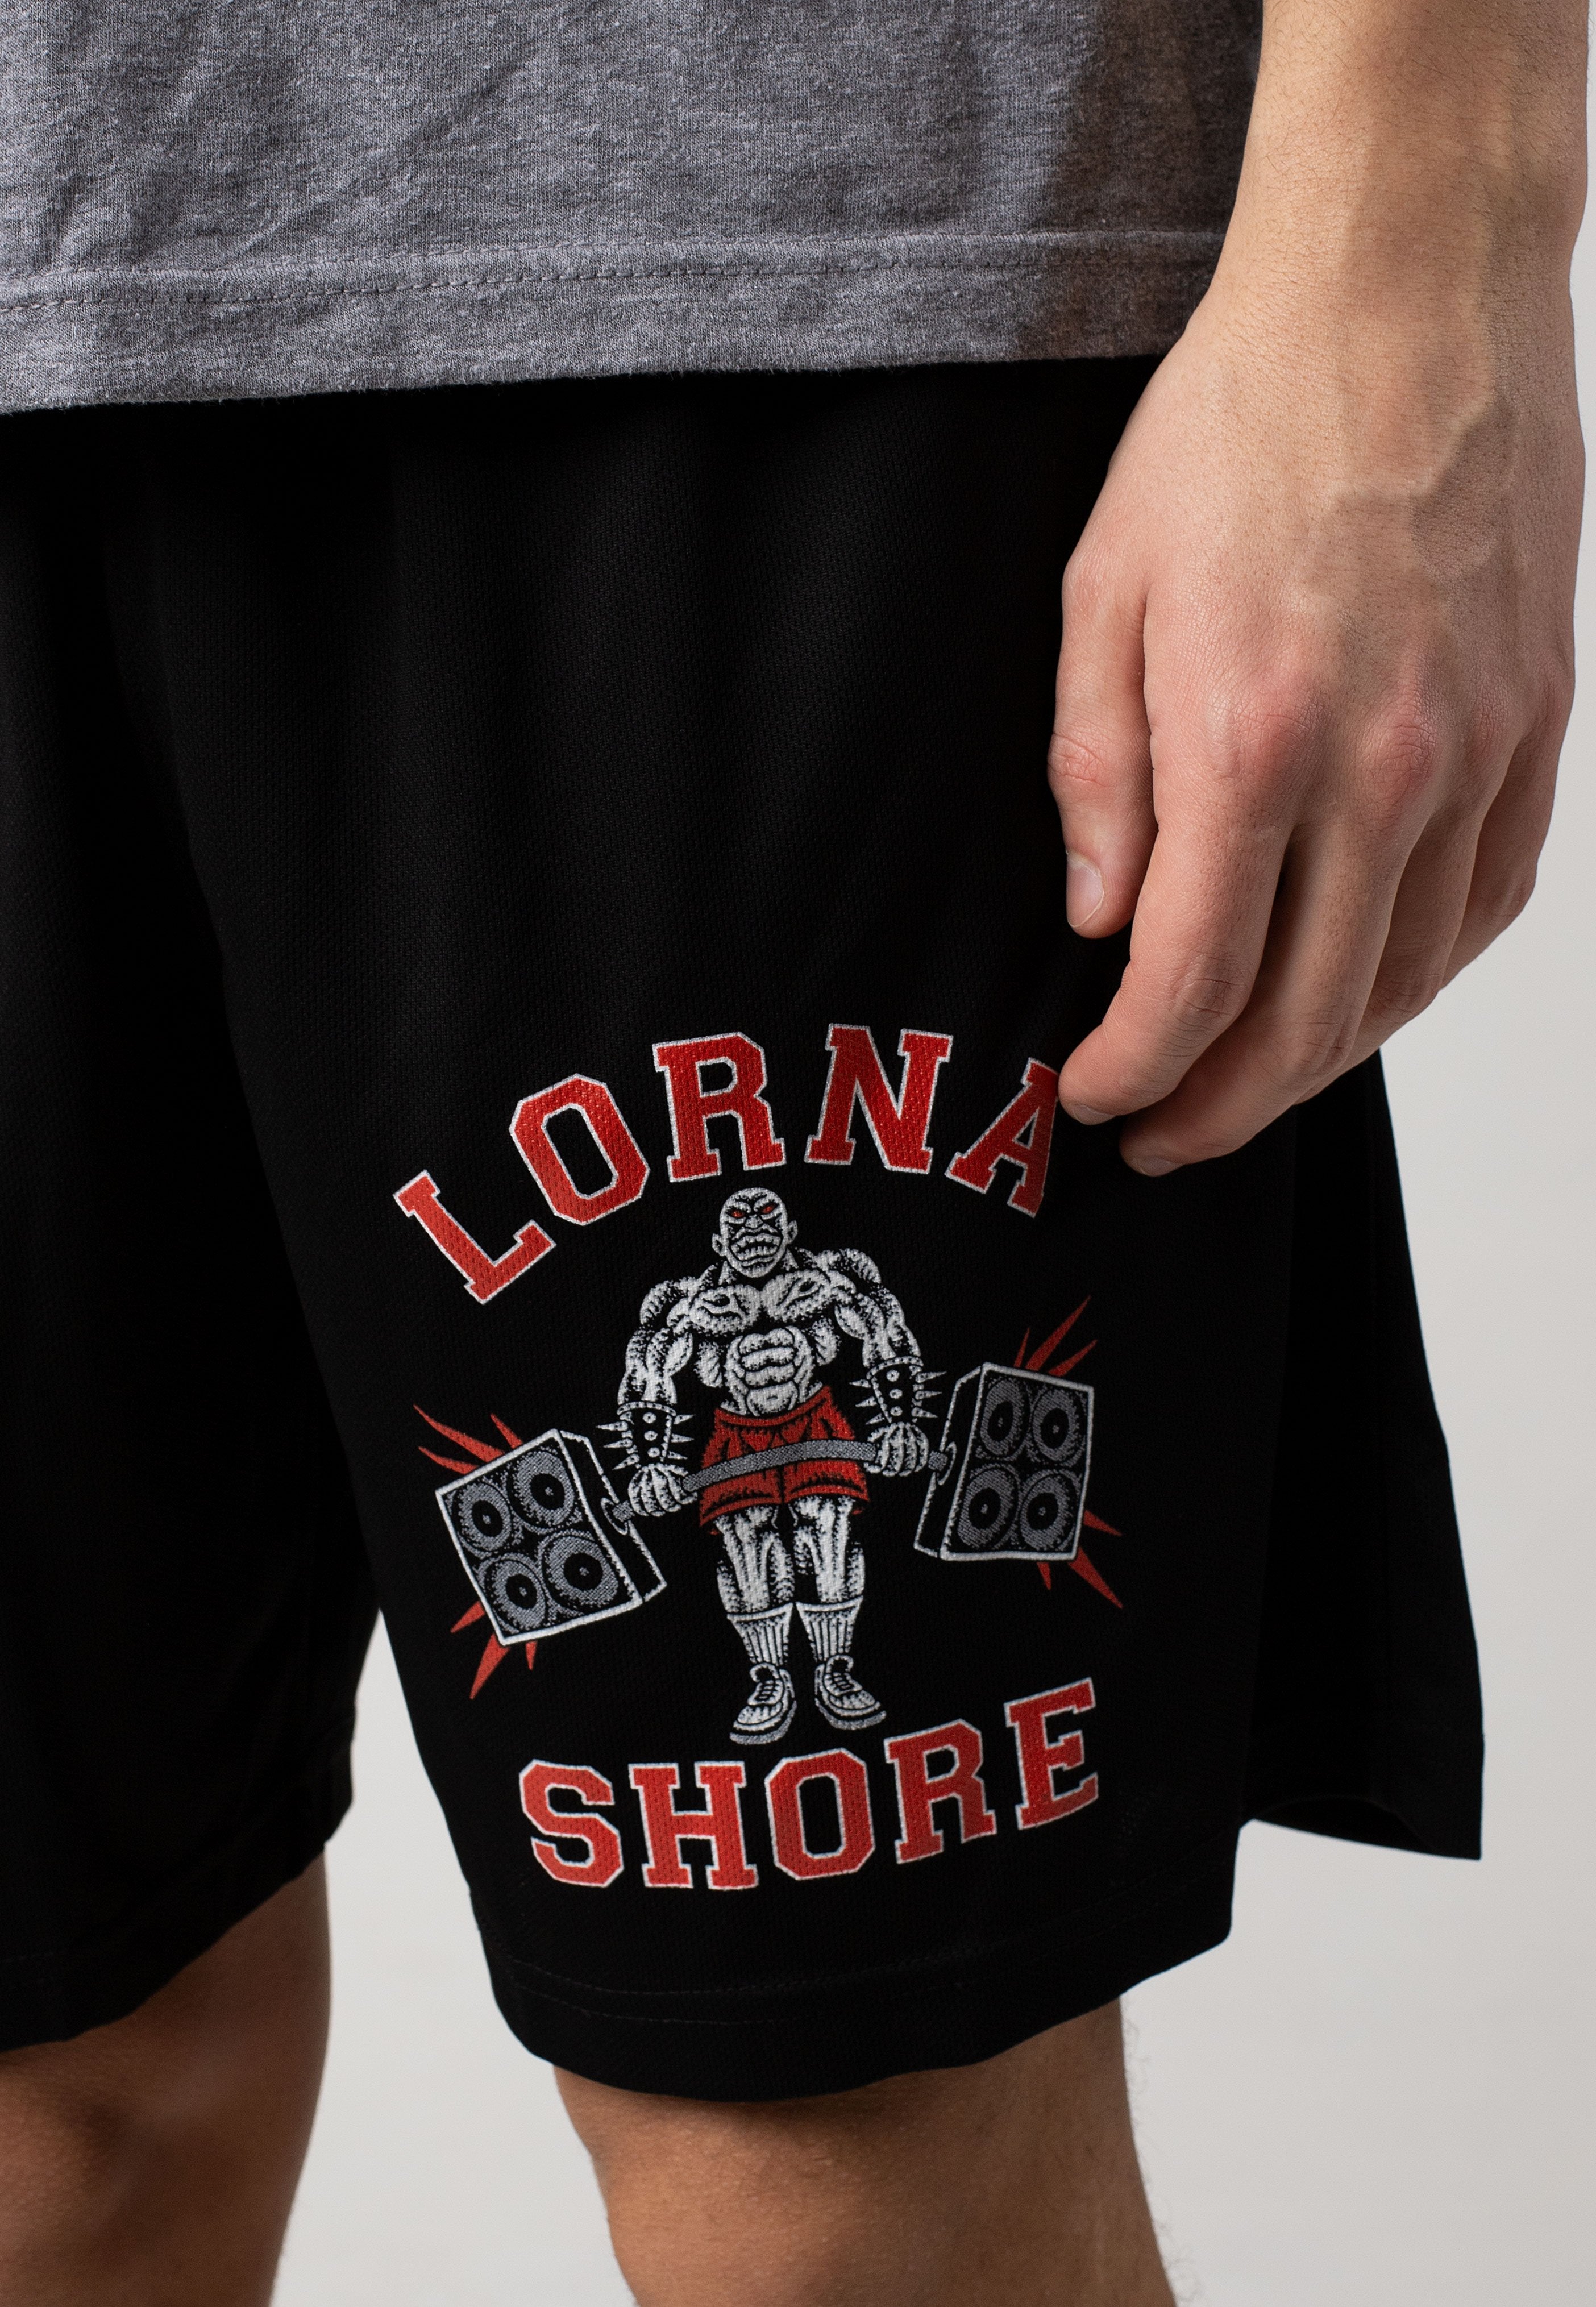 Lorna Shore - No Pain No Gain - Shorts